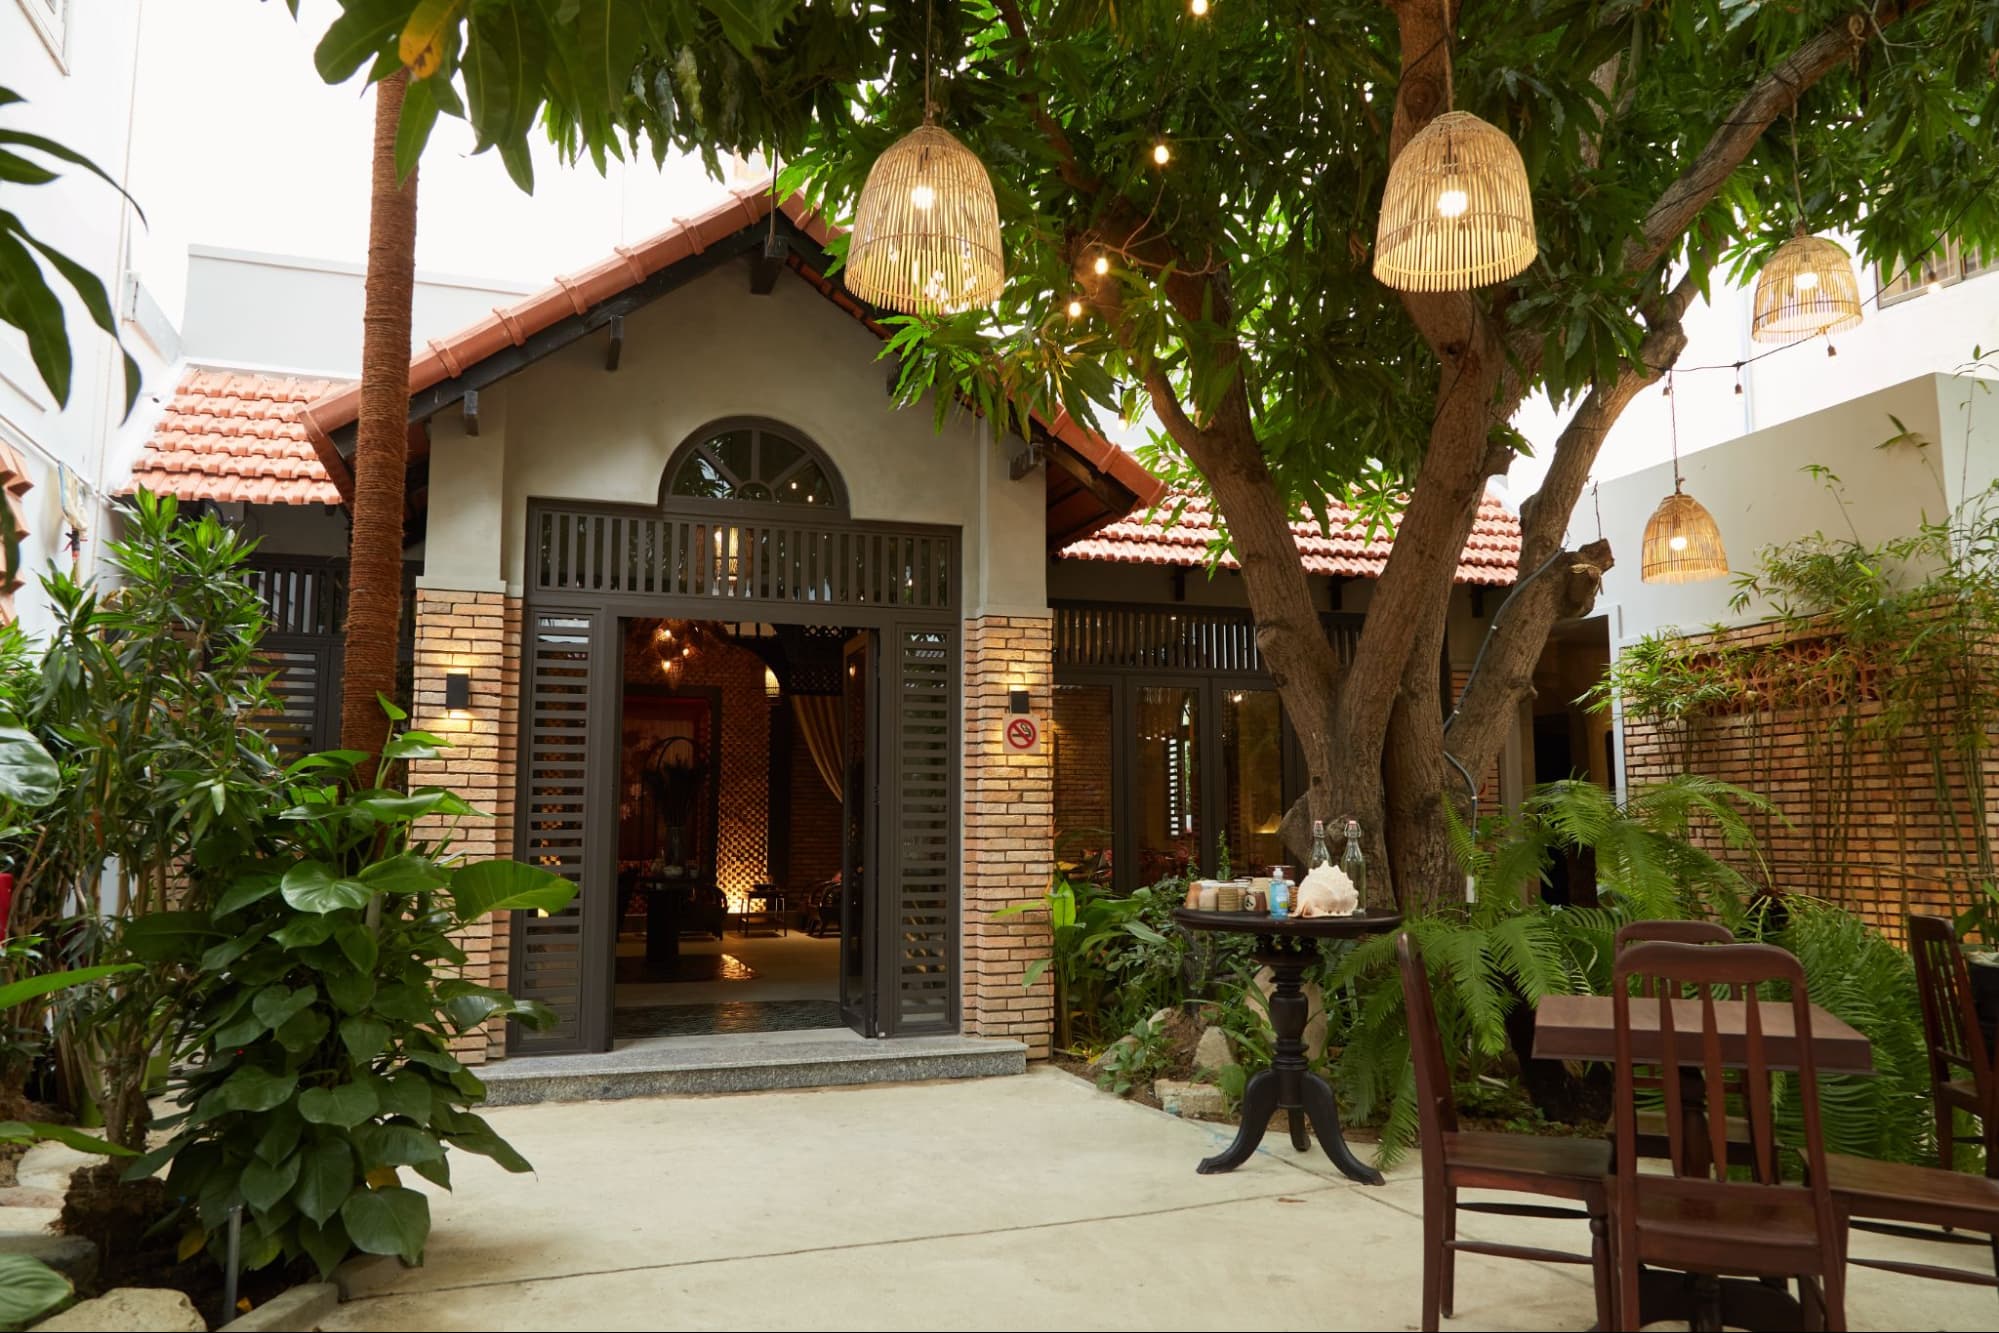 Tham khảo thiết kế nhà hàng sân vườn theo phong cách Việt Nam bình dị